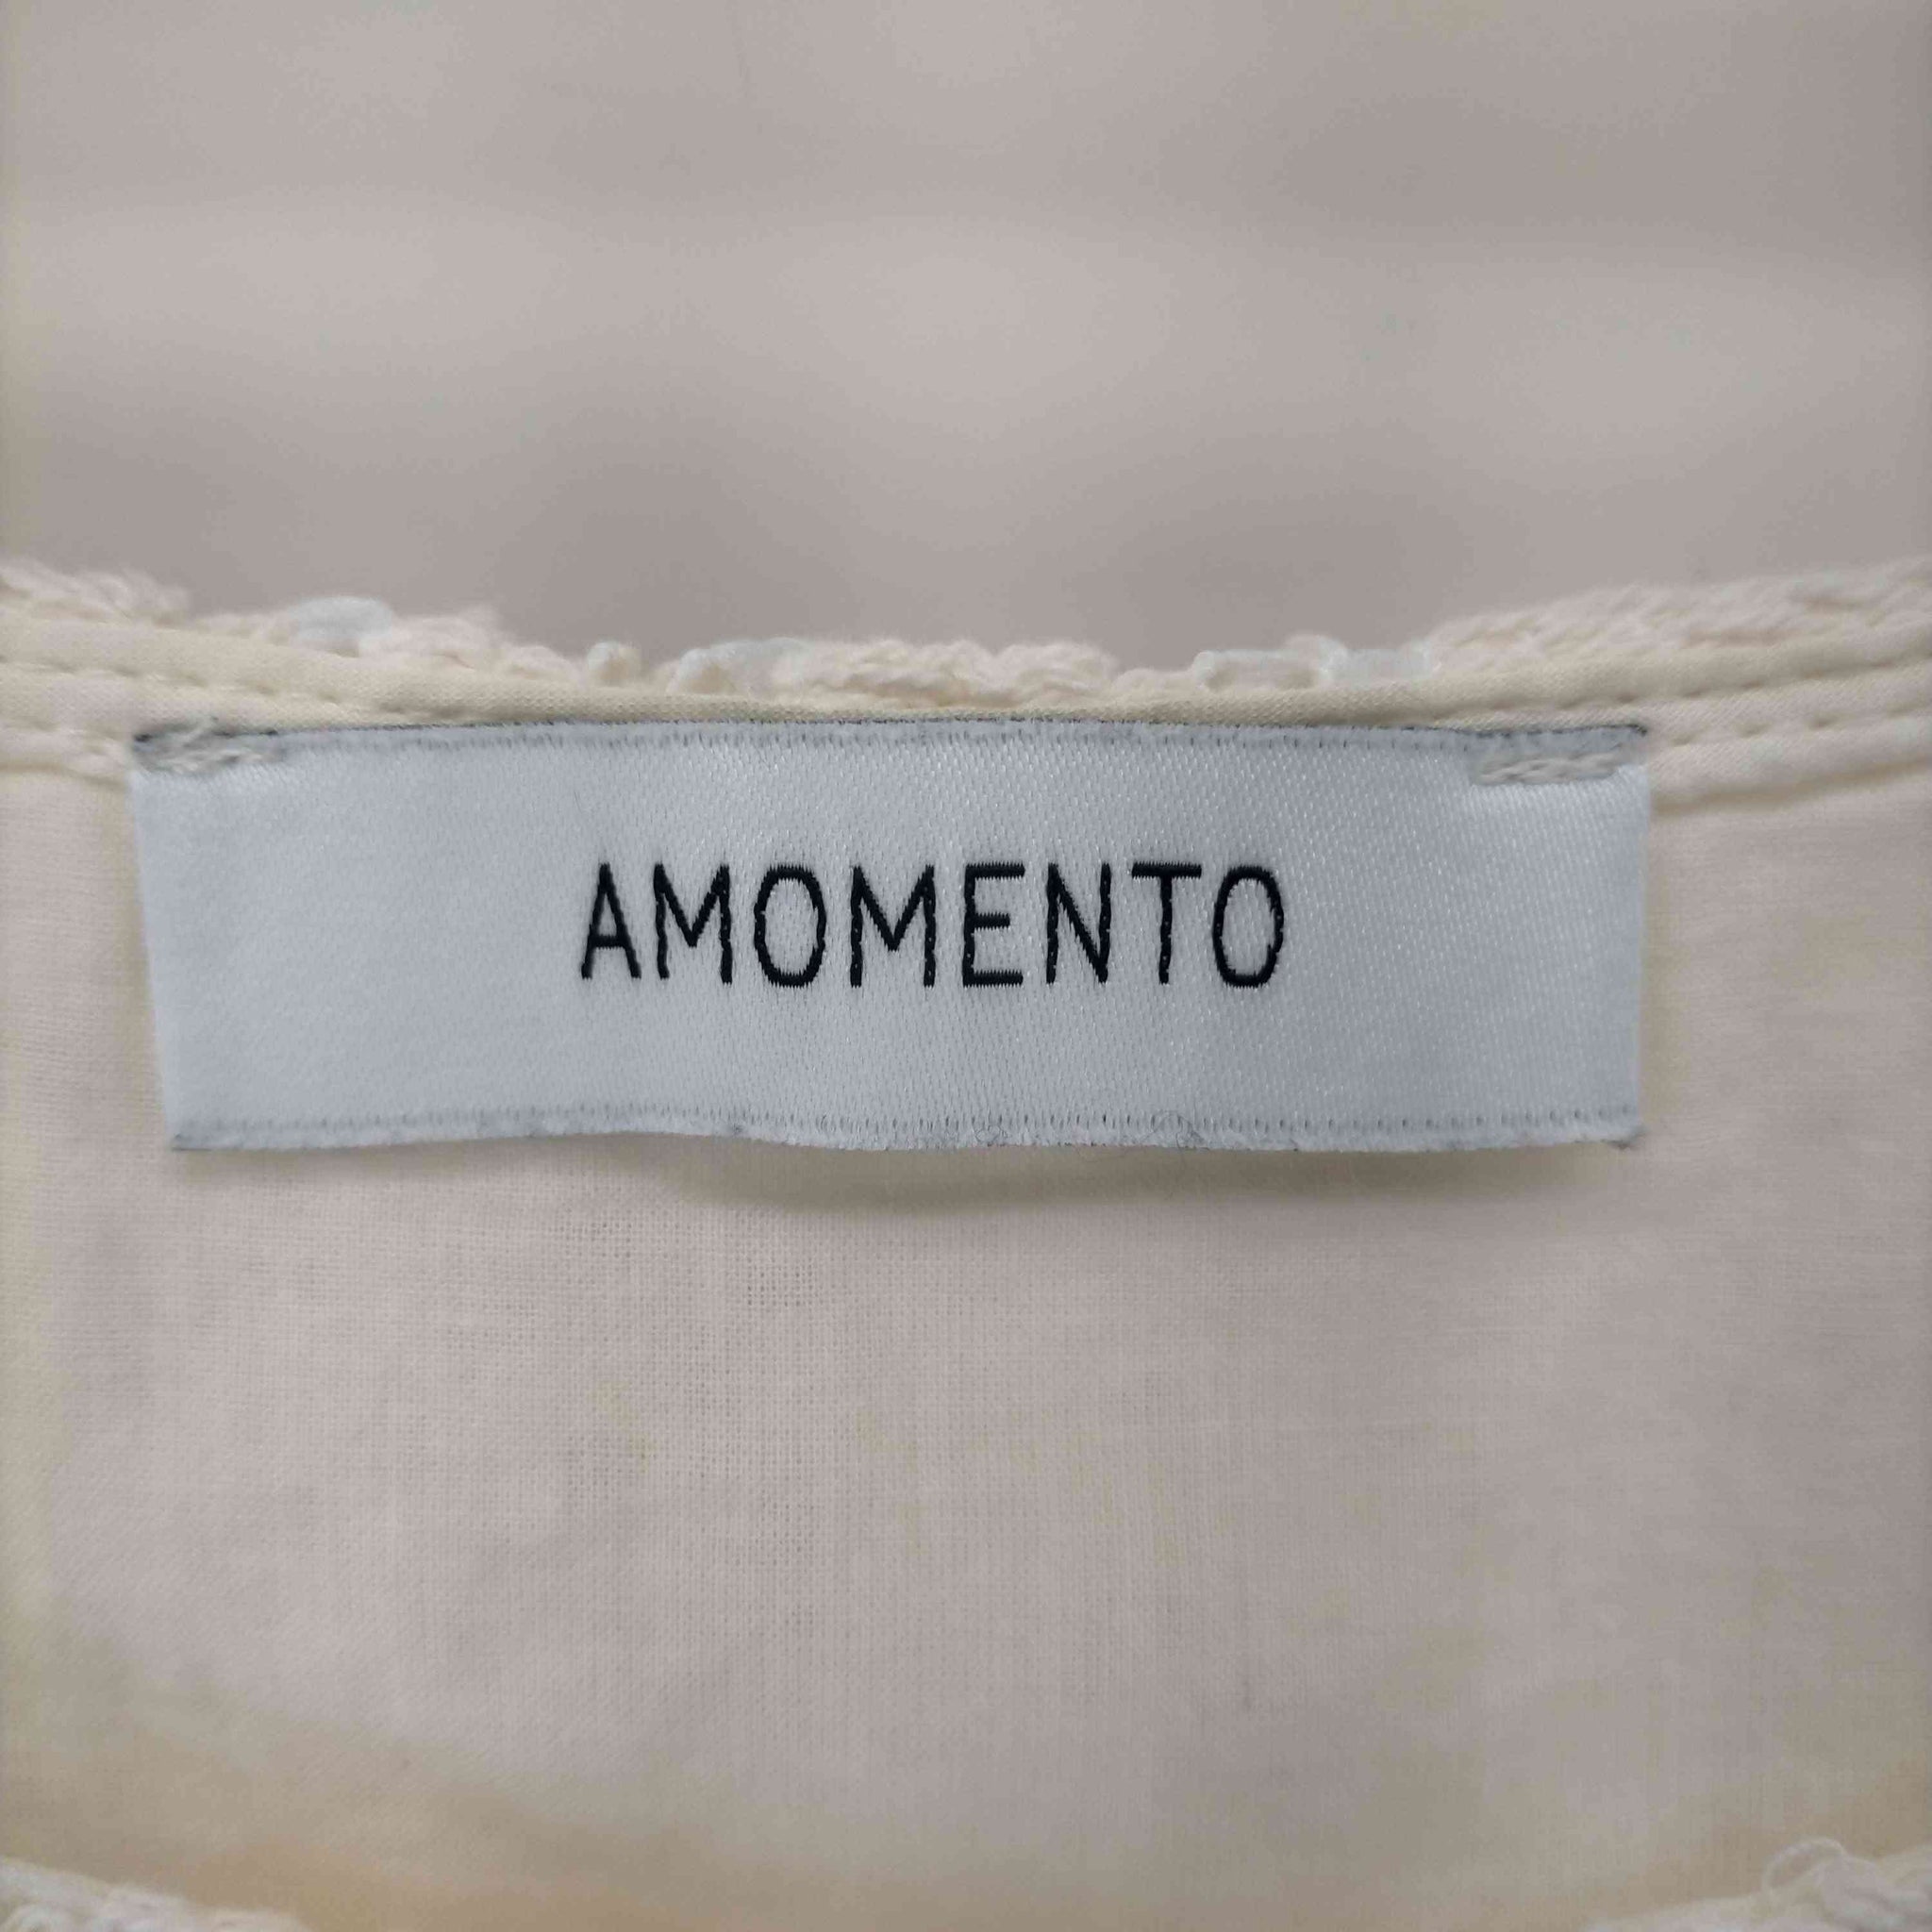 amomento(アモーメント)21SS デザインノースリーブワンピース